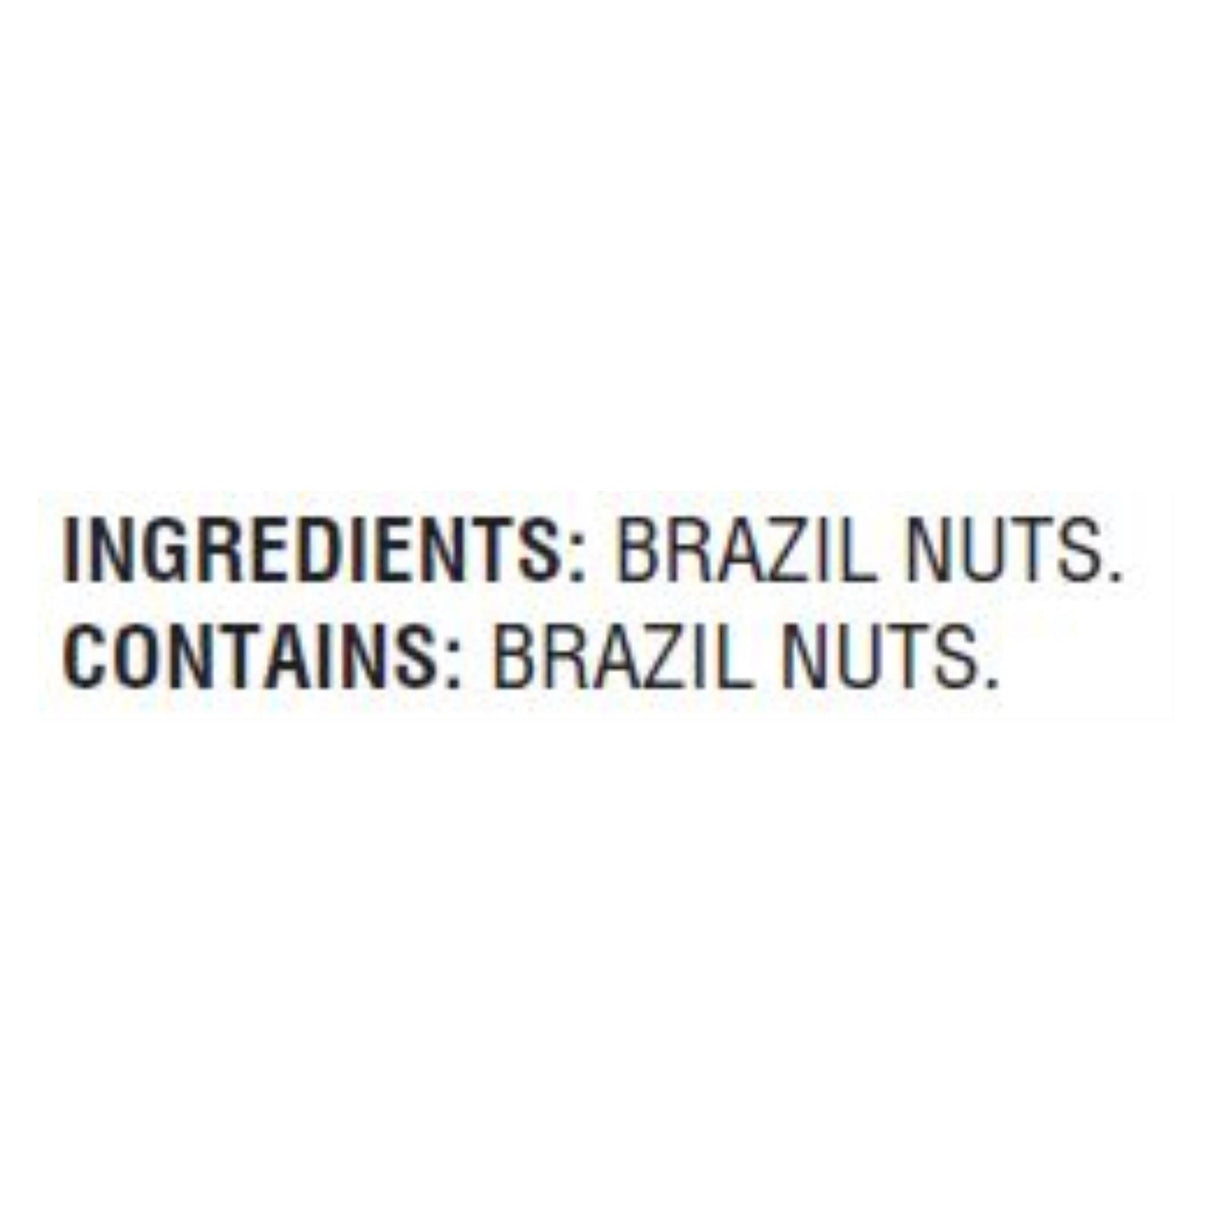 Woodstock Premium Non-GMO Brazil Nuts, 9 Oz. Pack of 8 - Cozy Farm 